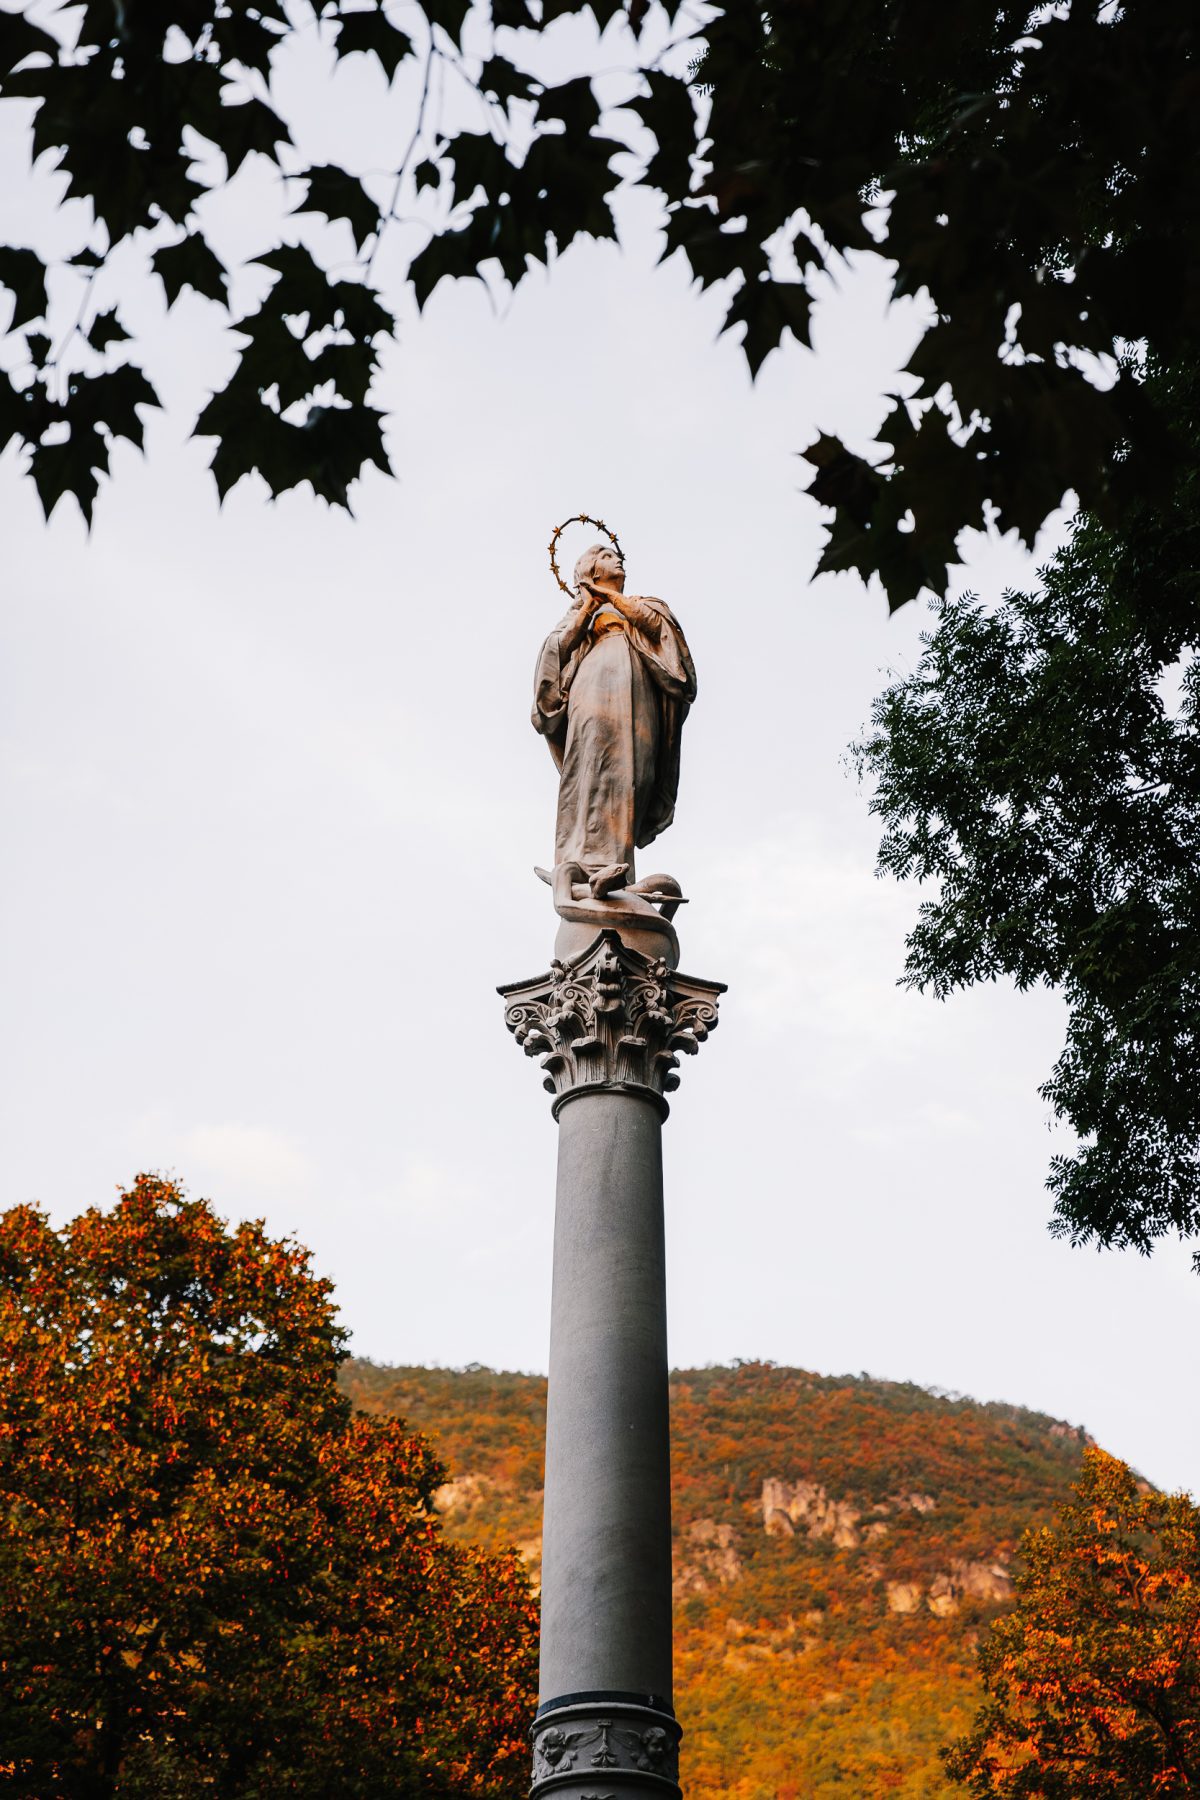 Maria beeld in Bolzano/Bozen